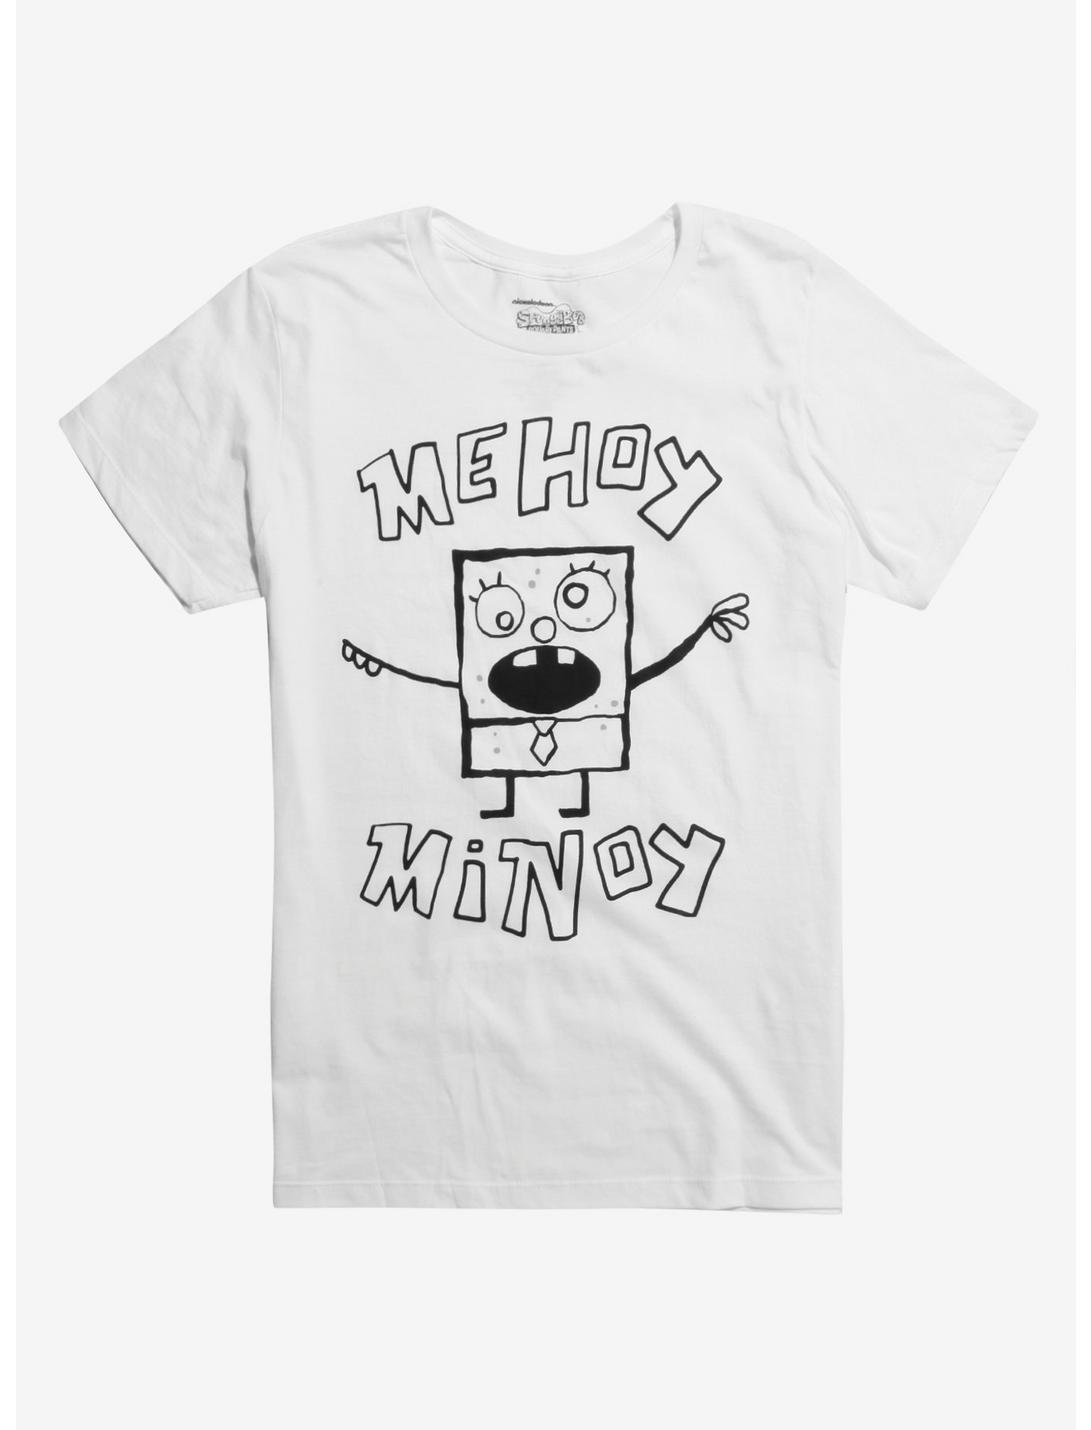 SpongeBob SquarePants DoodleBob T-Shirt Hot Topic Exclusive, MULTI, hi-res